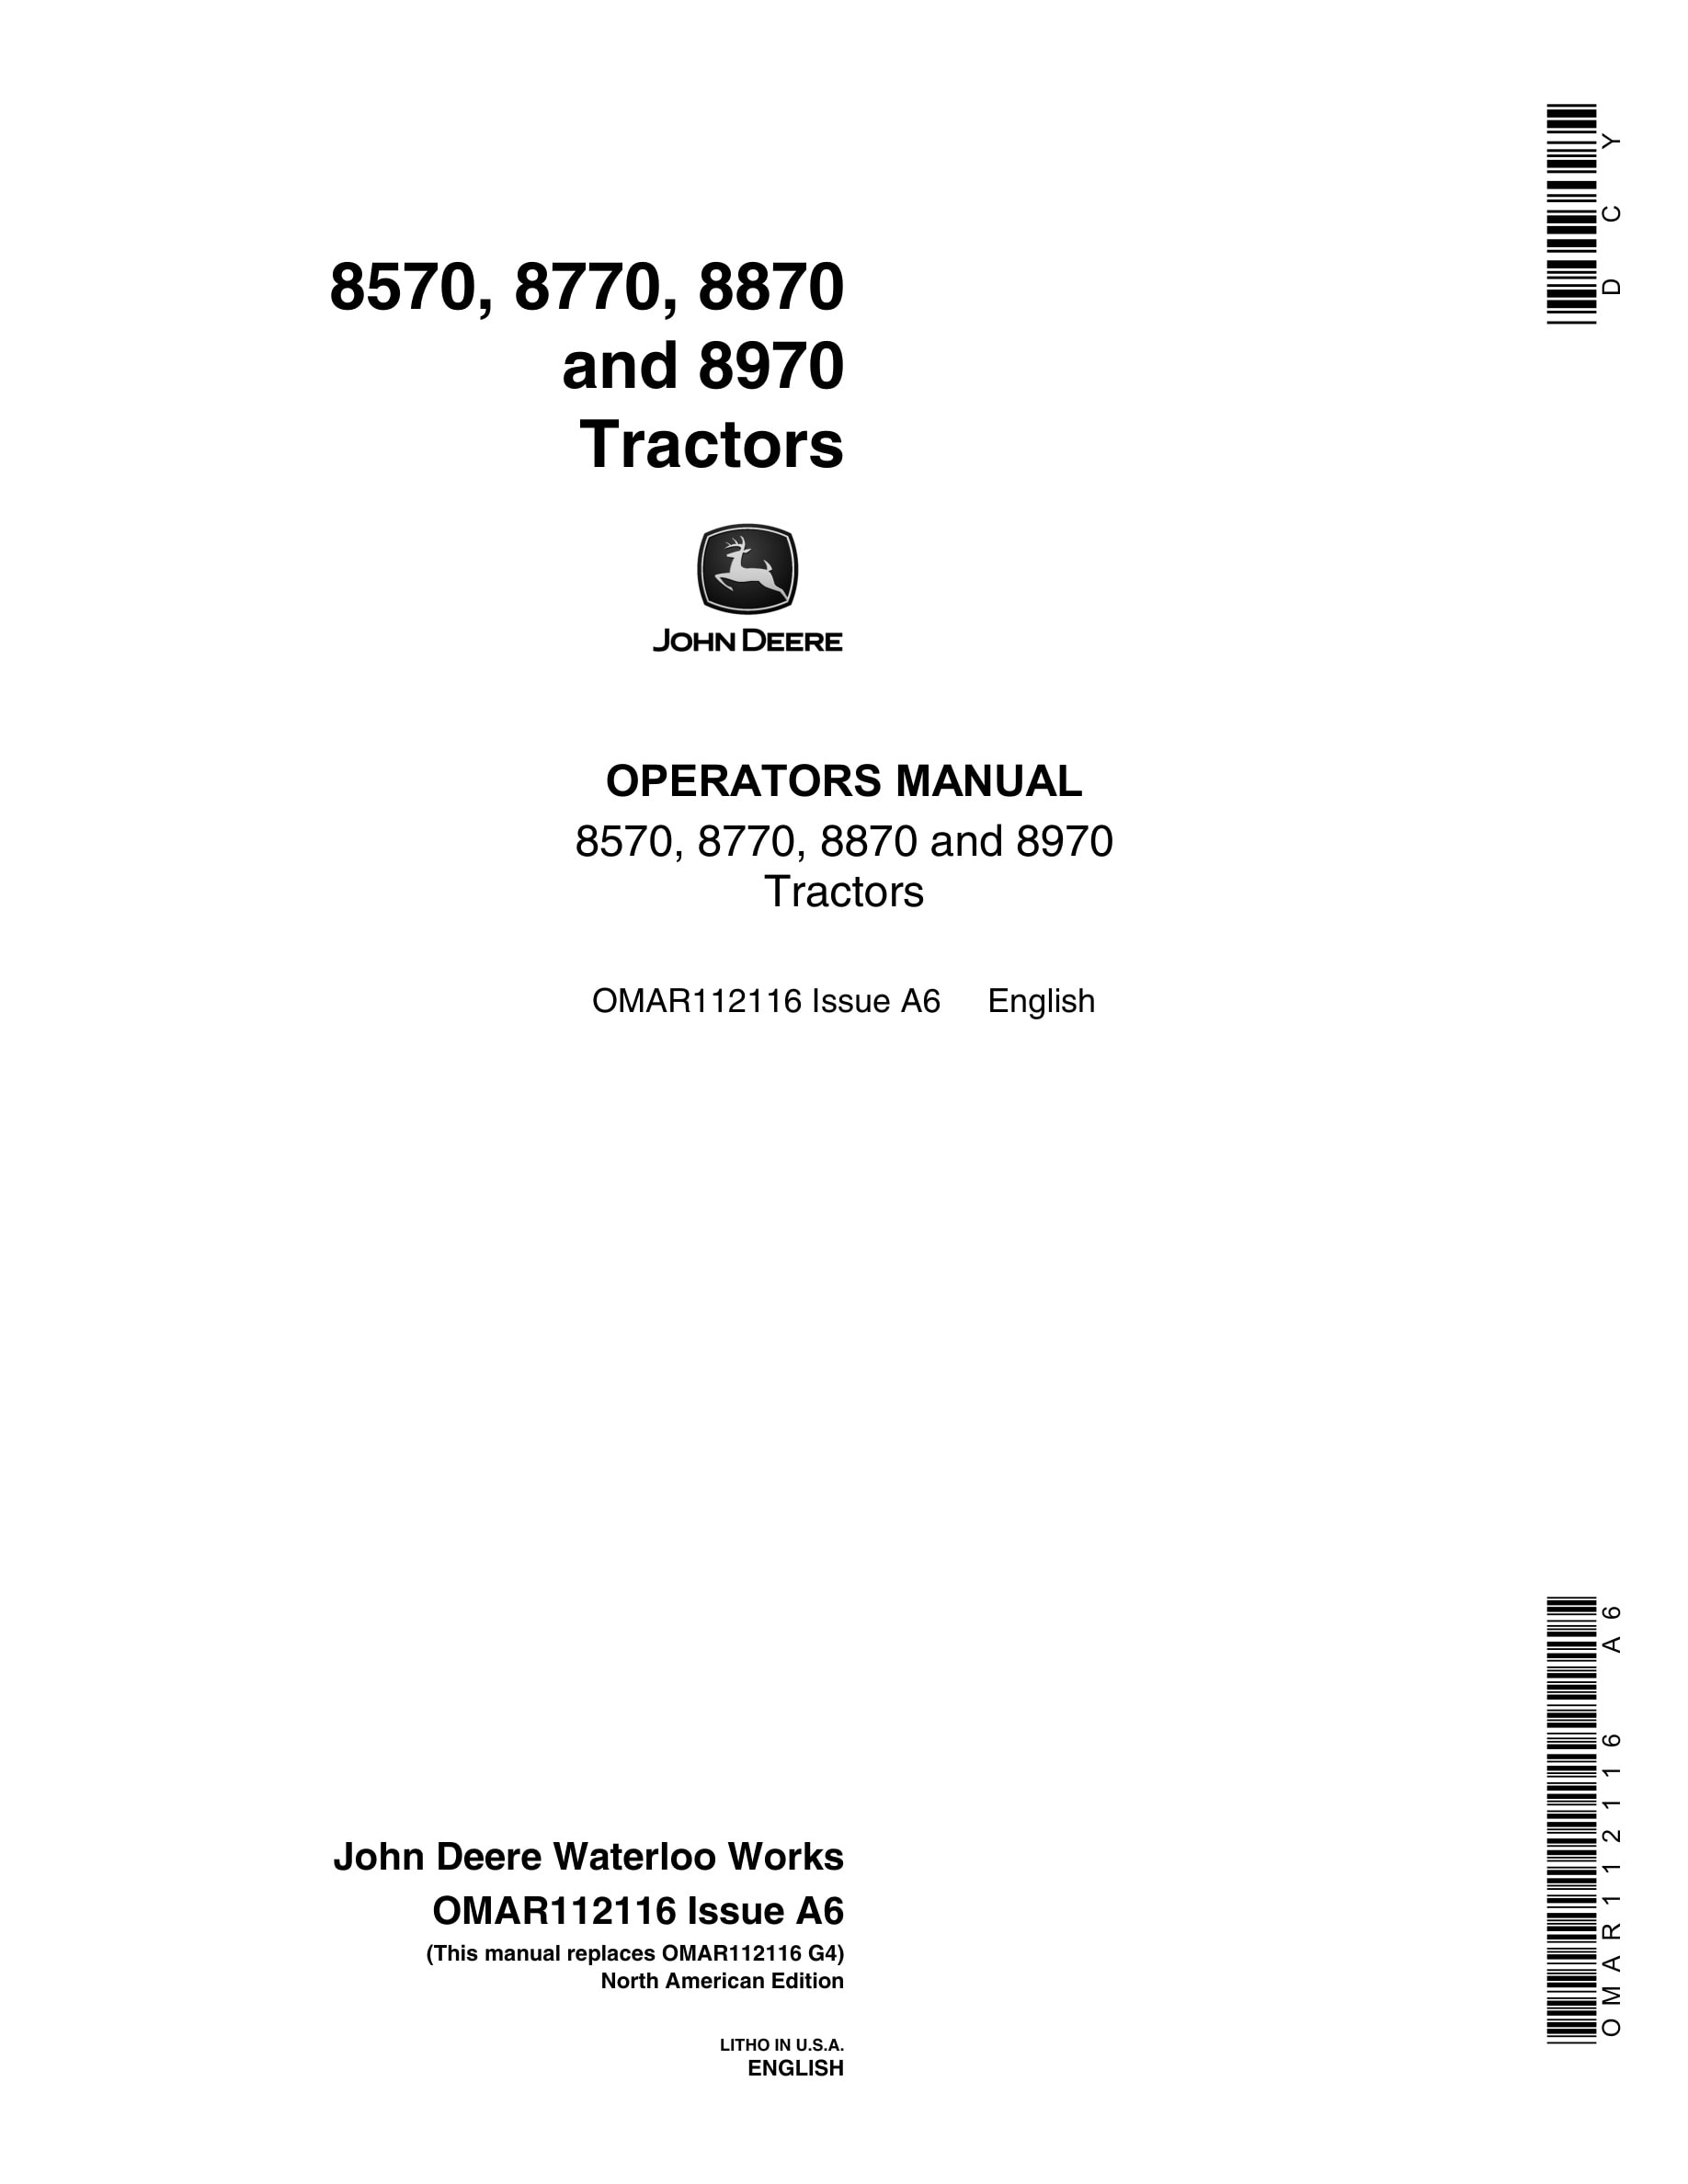 John Deere 8570, 8770, 8870 and 8970 Tractor Operator Manual OMAR112116-1